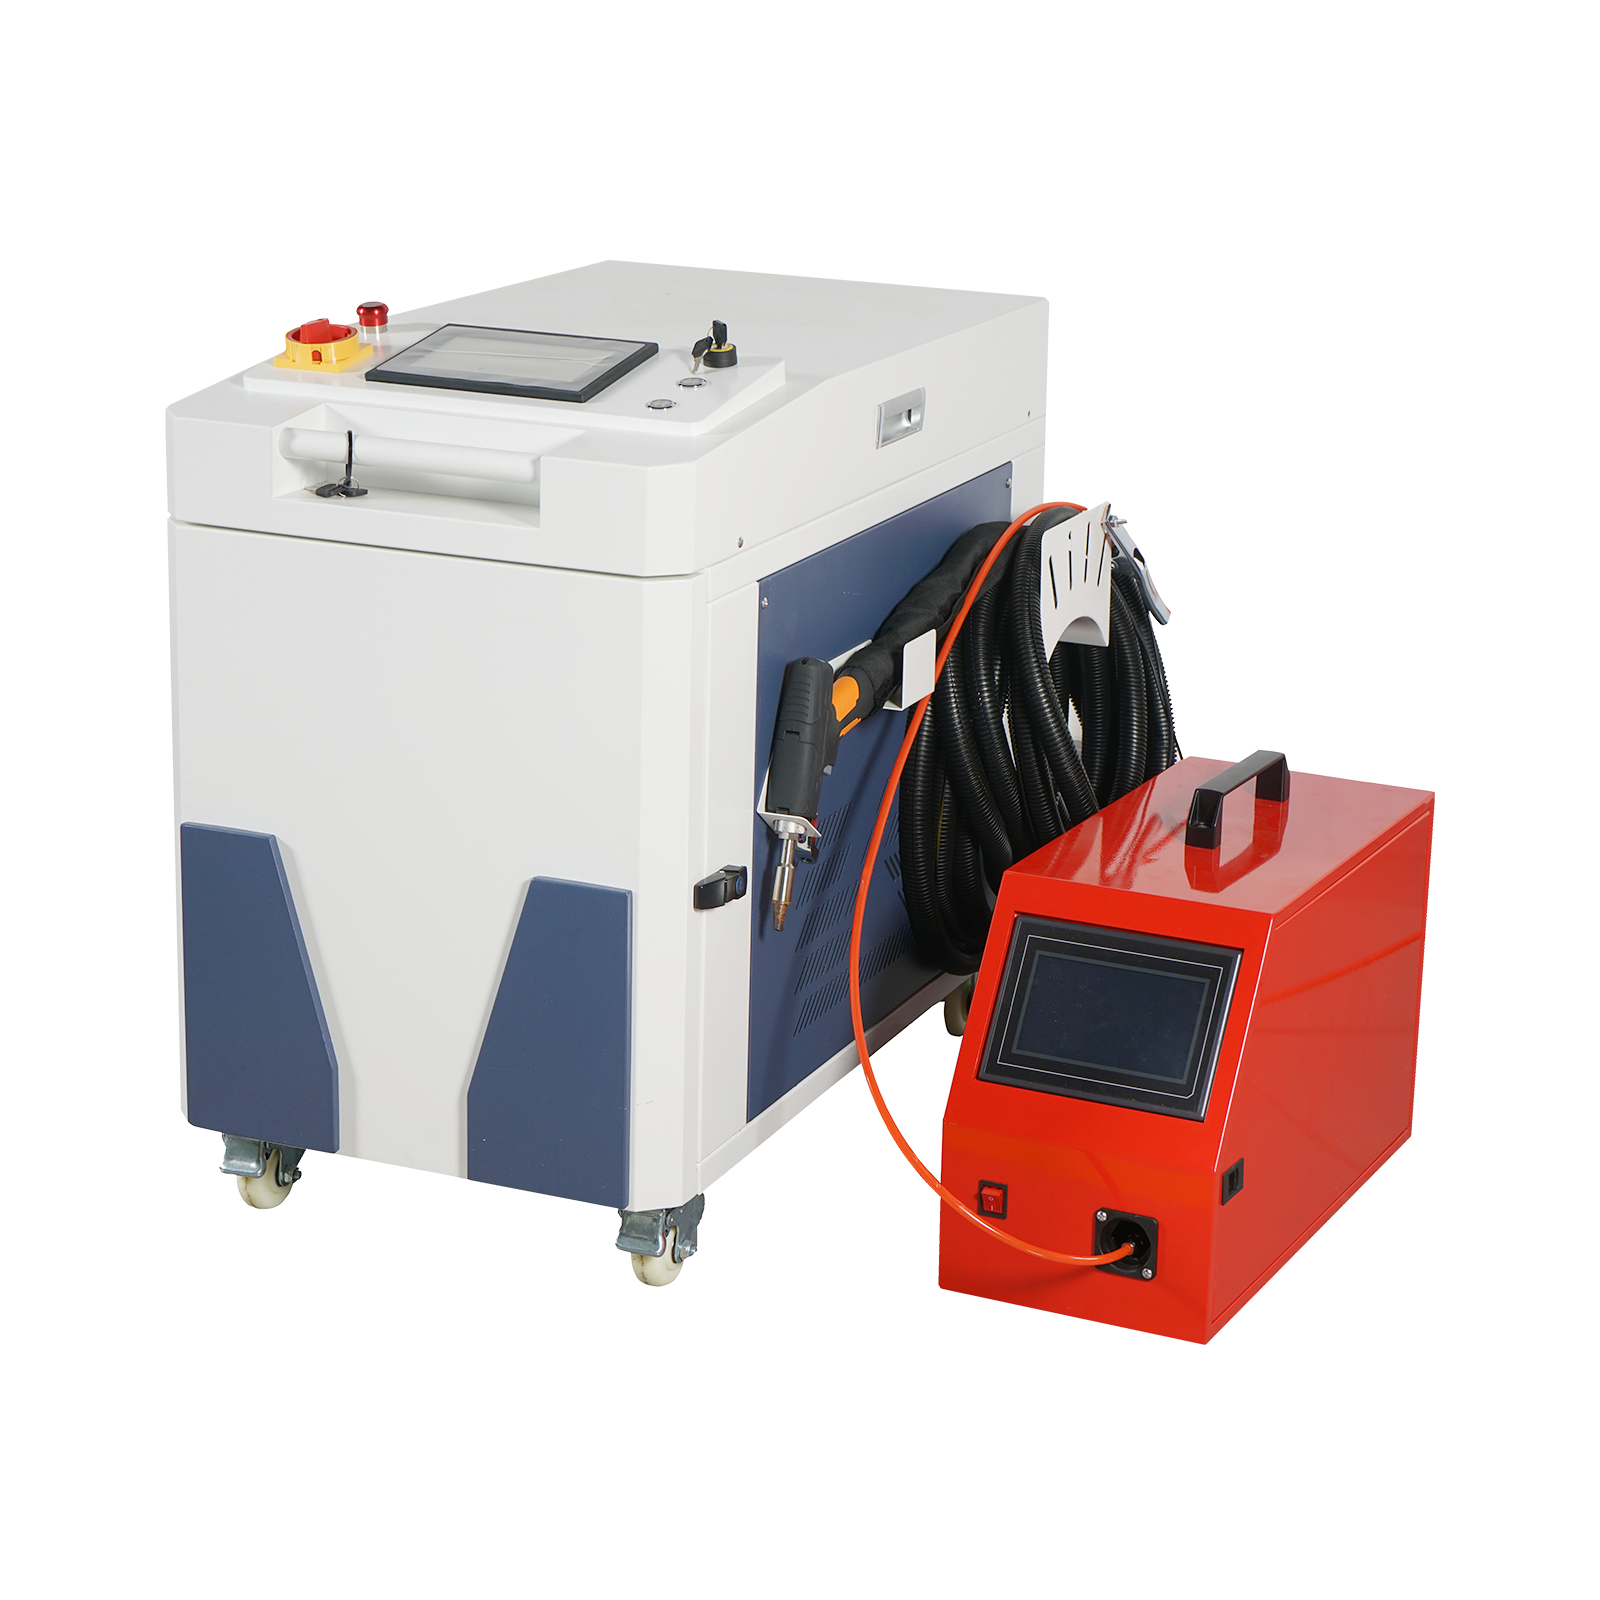 MCWlaser Machine de soudage laser portable 1000 W/1500 W/2000 W Soudeuse laser à fibre continue avec dévidoir automatique et système de refroidissement pour le soudage des métaux 220 V 50/60 Hz – Blanc